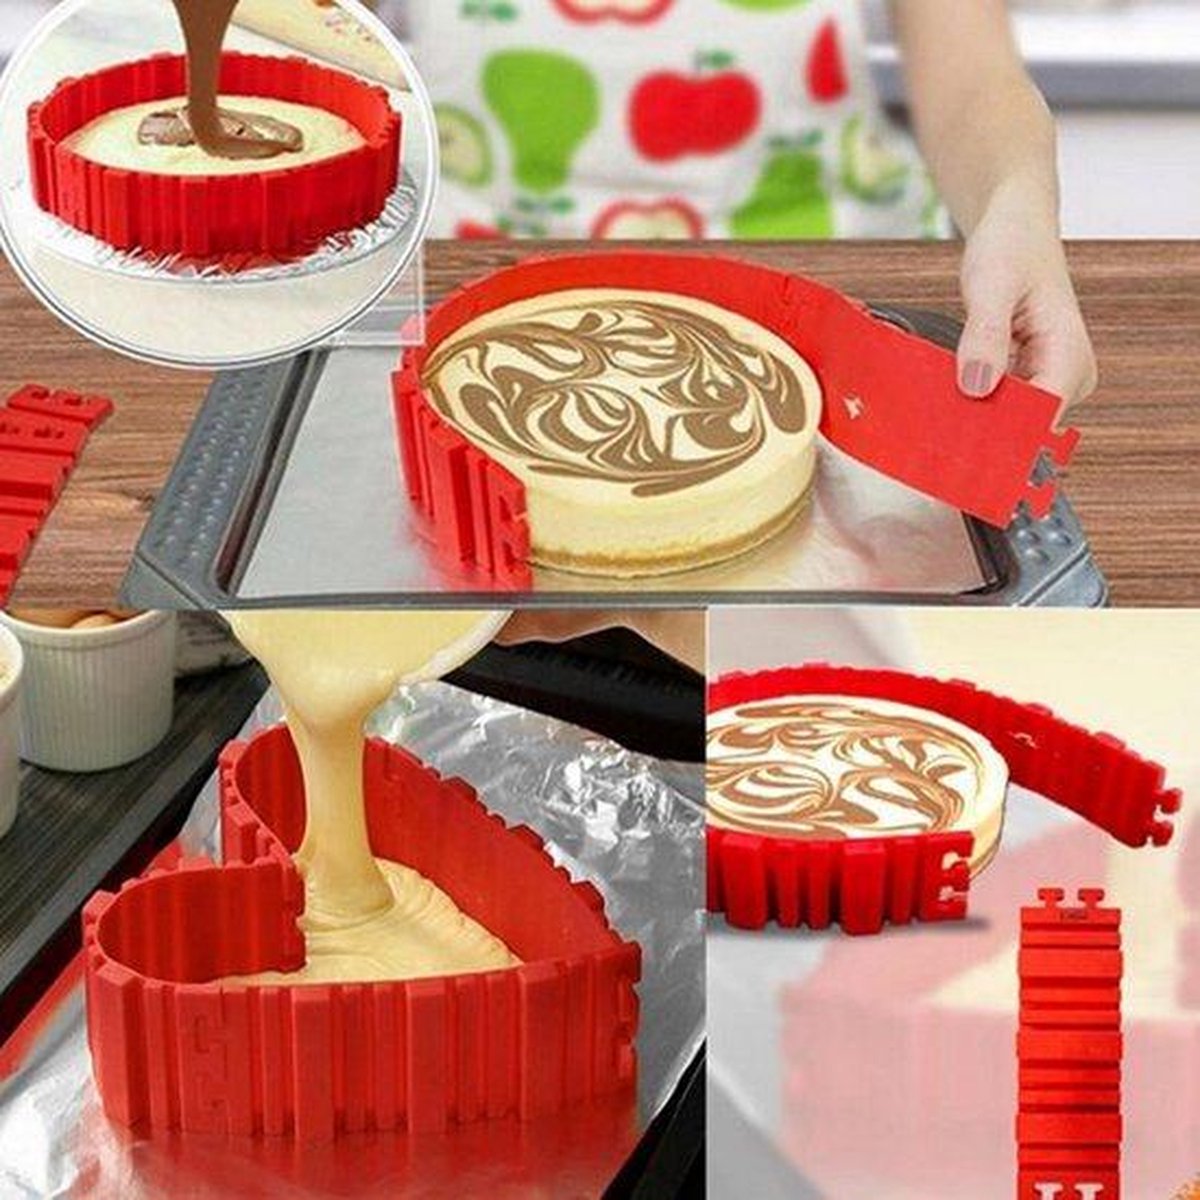 Magic Snake Cake Vorm | Flexibele Siliconen Bakvorm Multifunctioneel | Bak Vorm in verschillende Stylen | Cake Vorm 4 stuks Flexibele Siliconen vormen | Kleur Rood